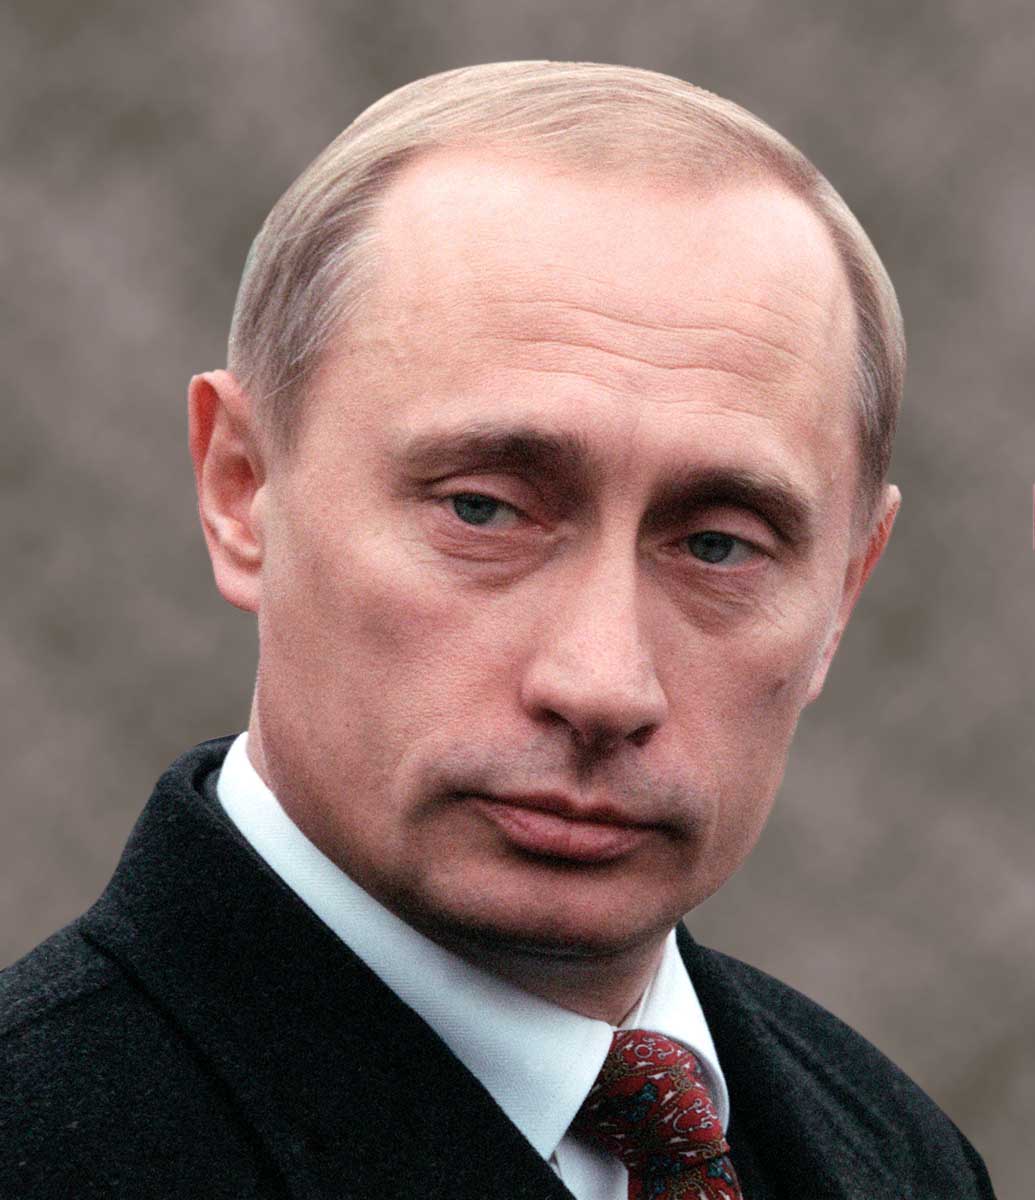 Hd Wallpaper Free: president of russia Vladimir Putin hq HD